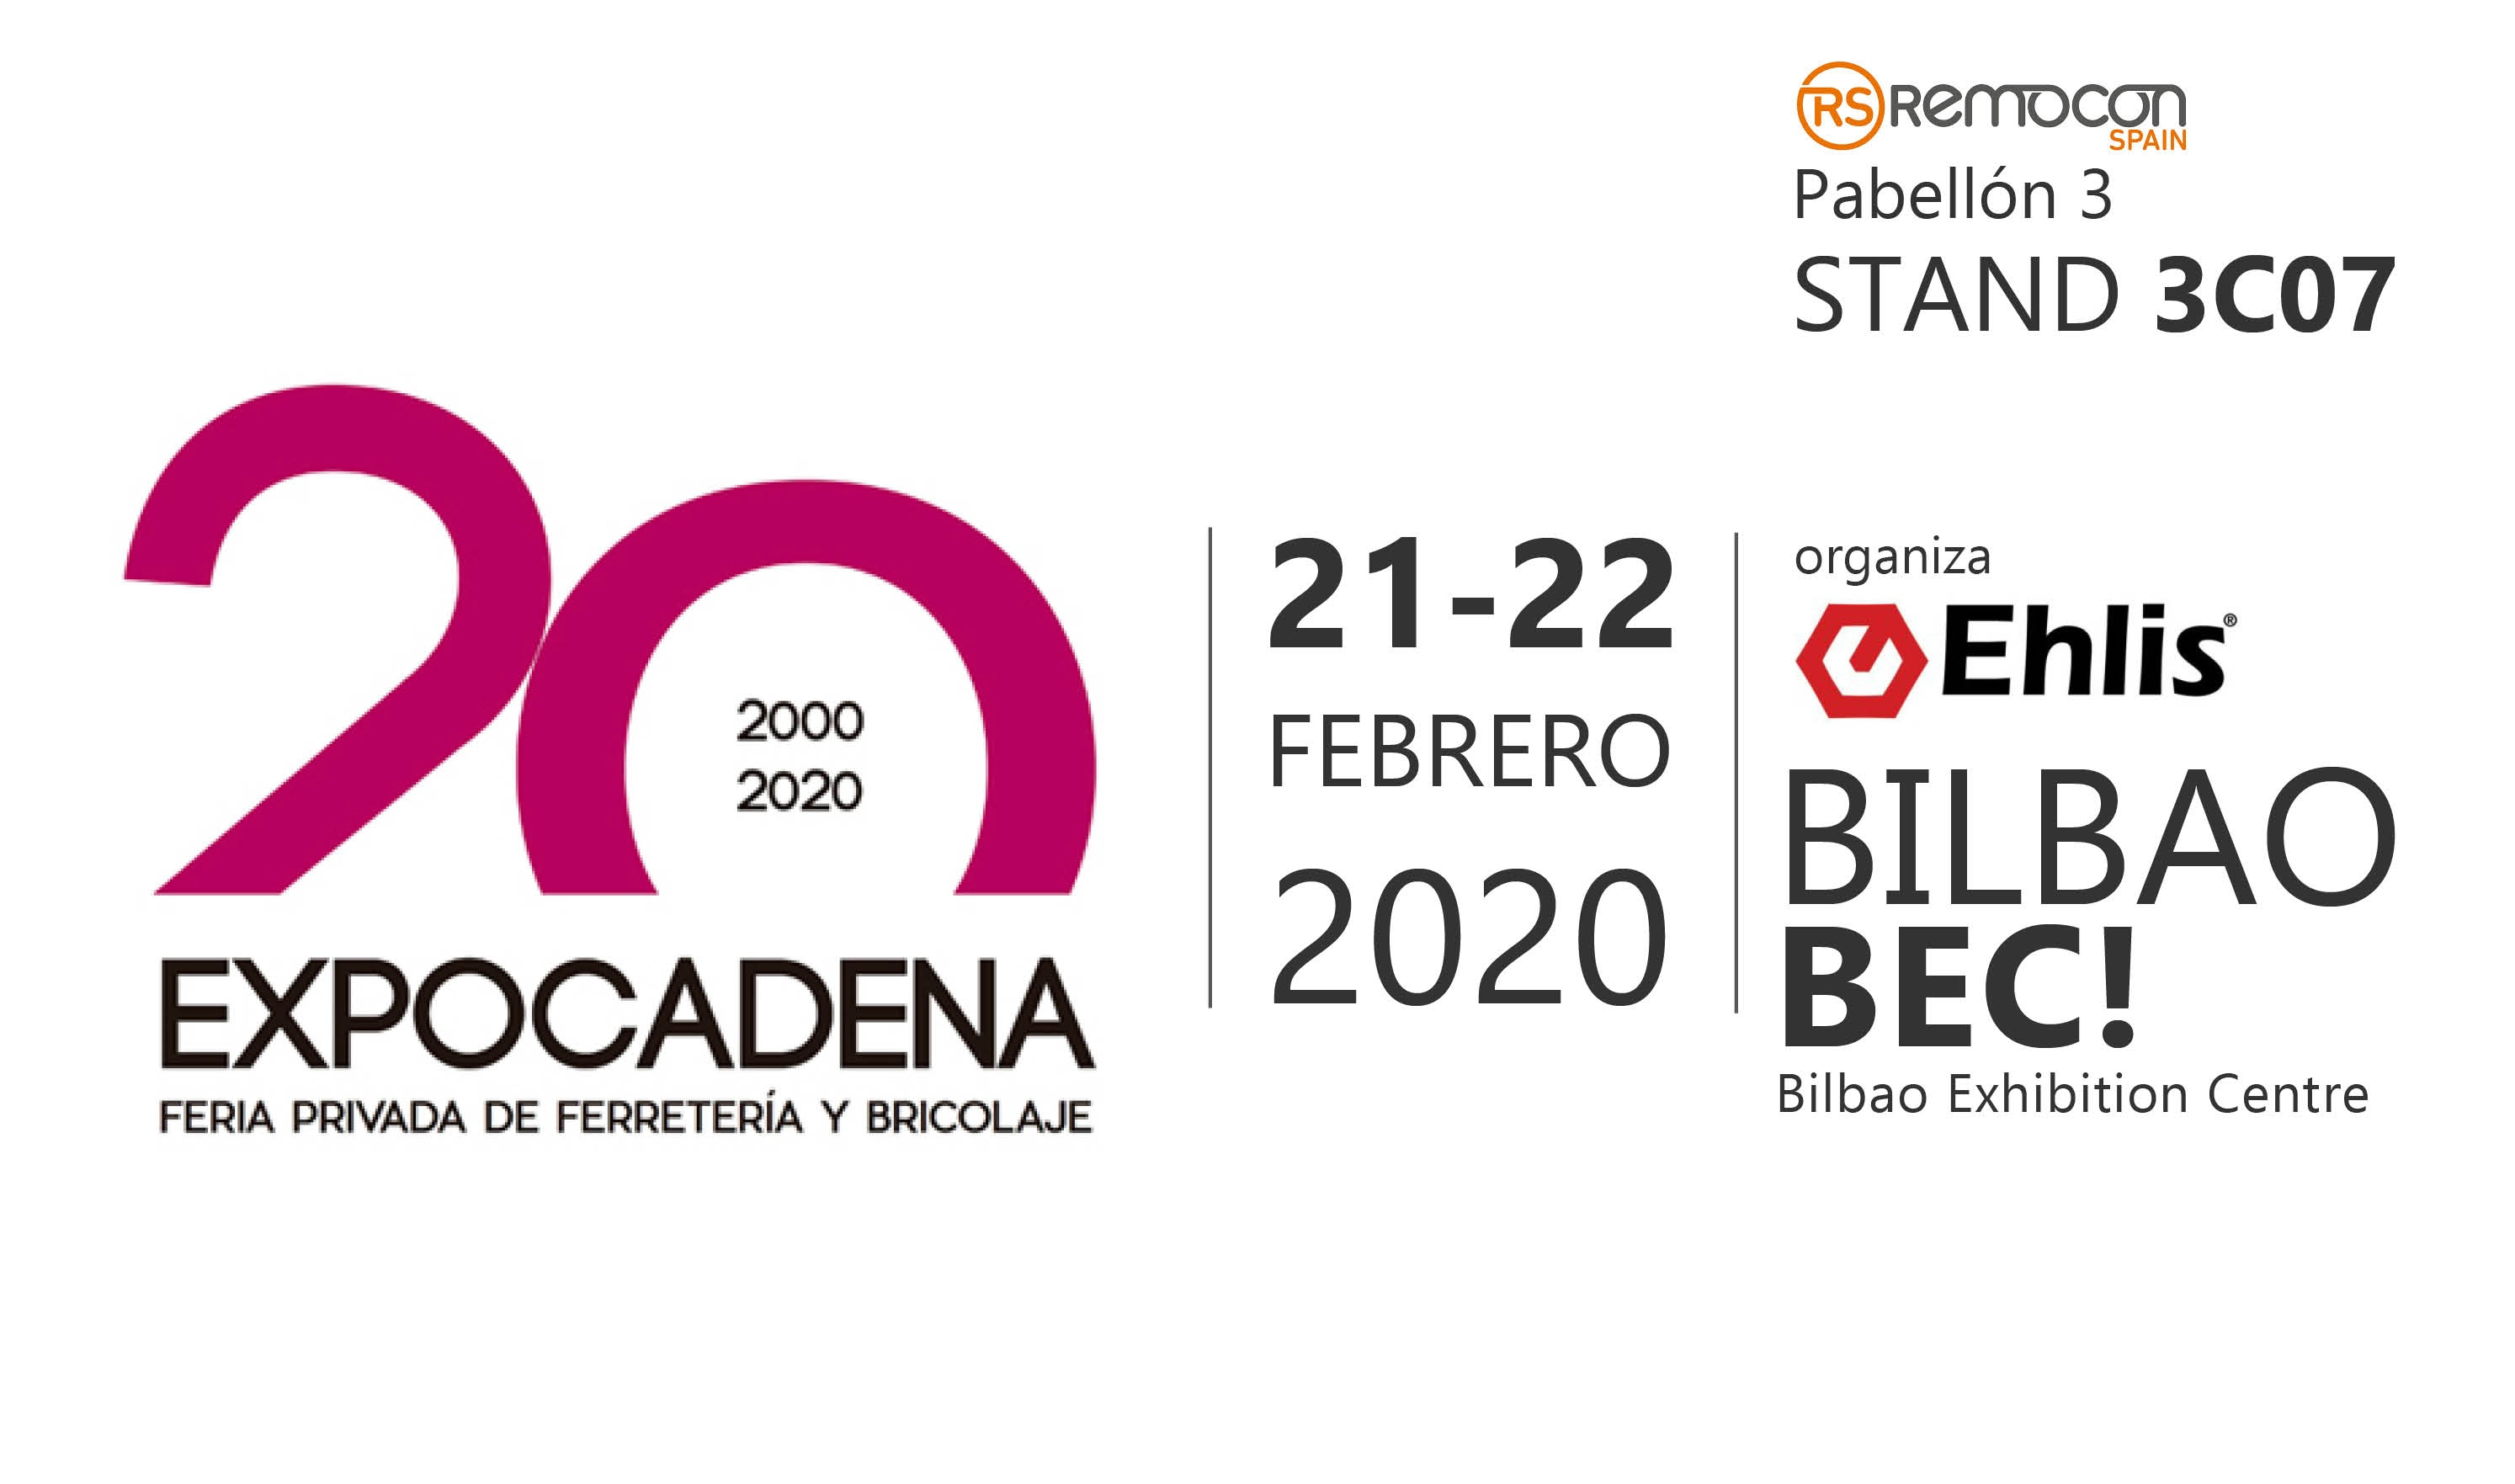 Feria Expocadena 88 - Bilbao - RemoconSP